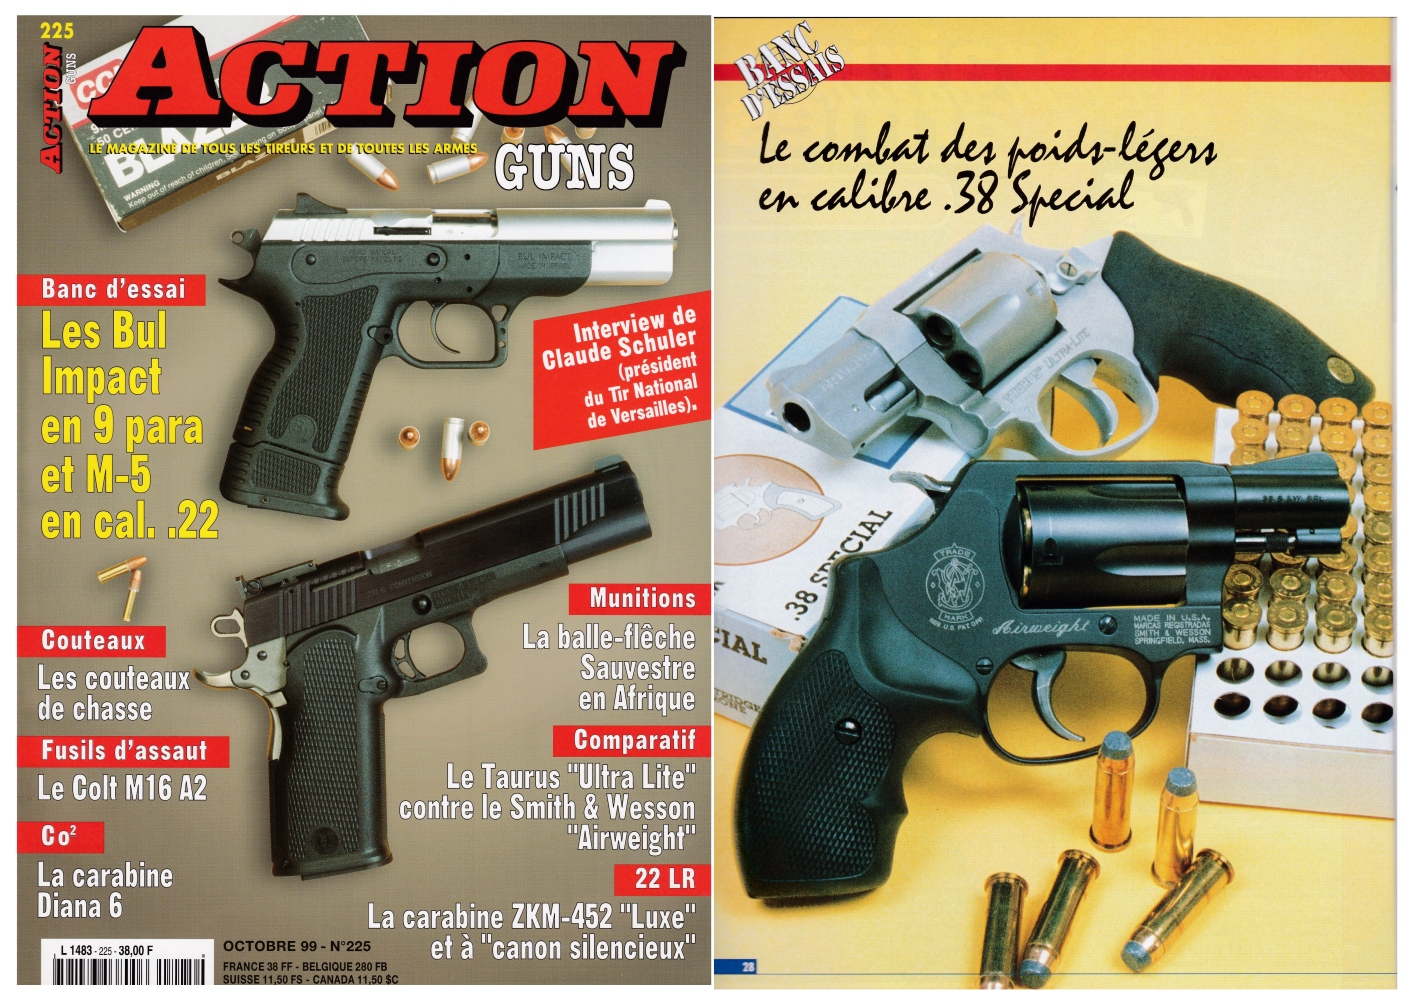 Le banc d’essai des revolvers Taurus « Ultra-Lite » vs Smith & Wesson « Airweight » a été publié sur 6 pages dans le magazine Action Guns n°225 (octobre 1999) 